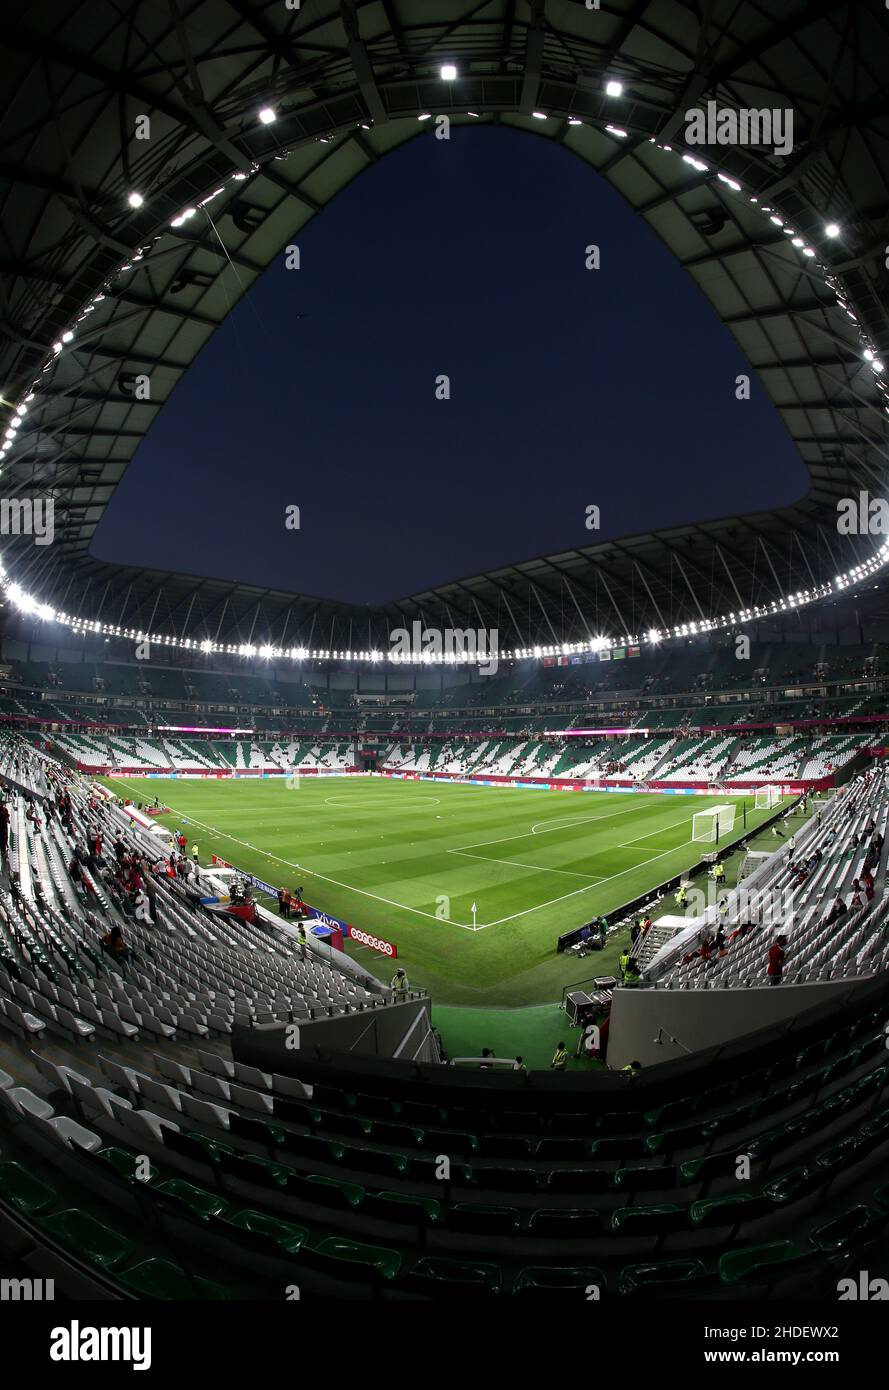 Allgemeine Ansicht des Education City Stadions in Al Rayyan, Katar. Aufgenommen während der FIFA Arab Cup im Aufbau bis zur FIFA Fußball-Weltmeisterschaft 2022. Foto von MB Media 10/12/2021 Stockfoto